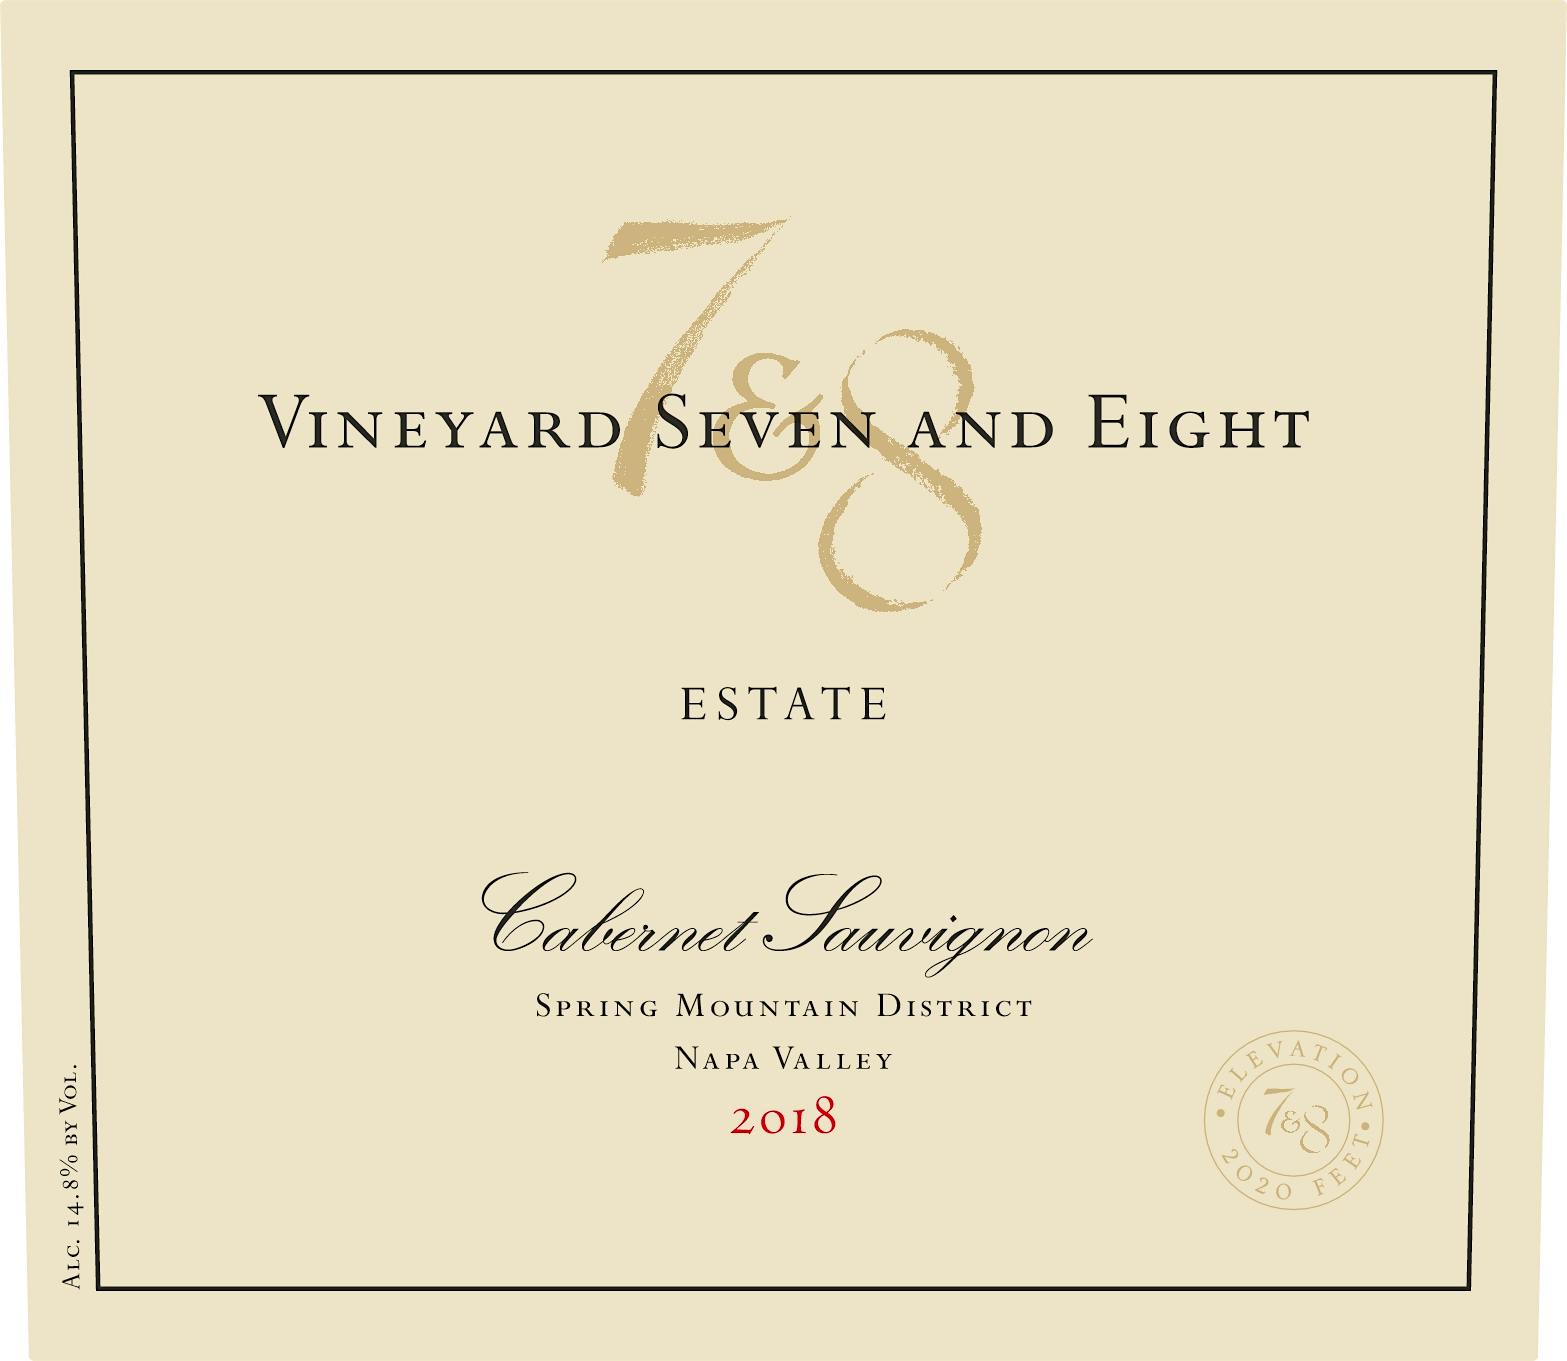 Label for Vineyard 7 & 8